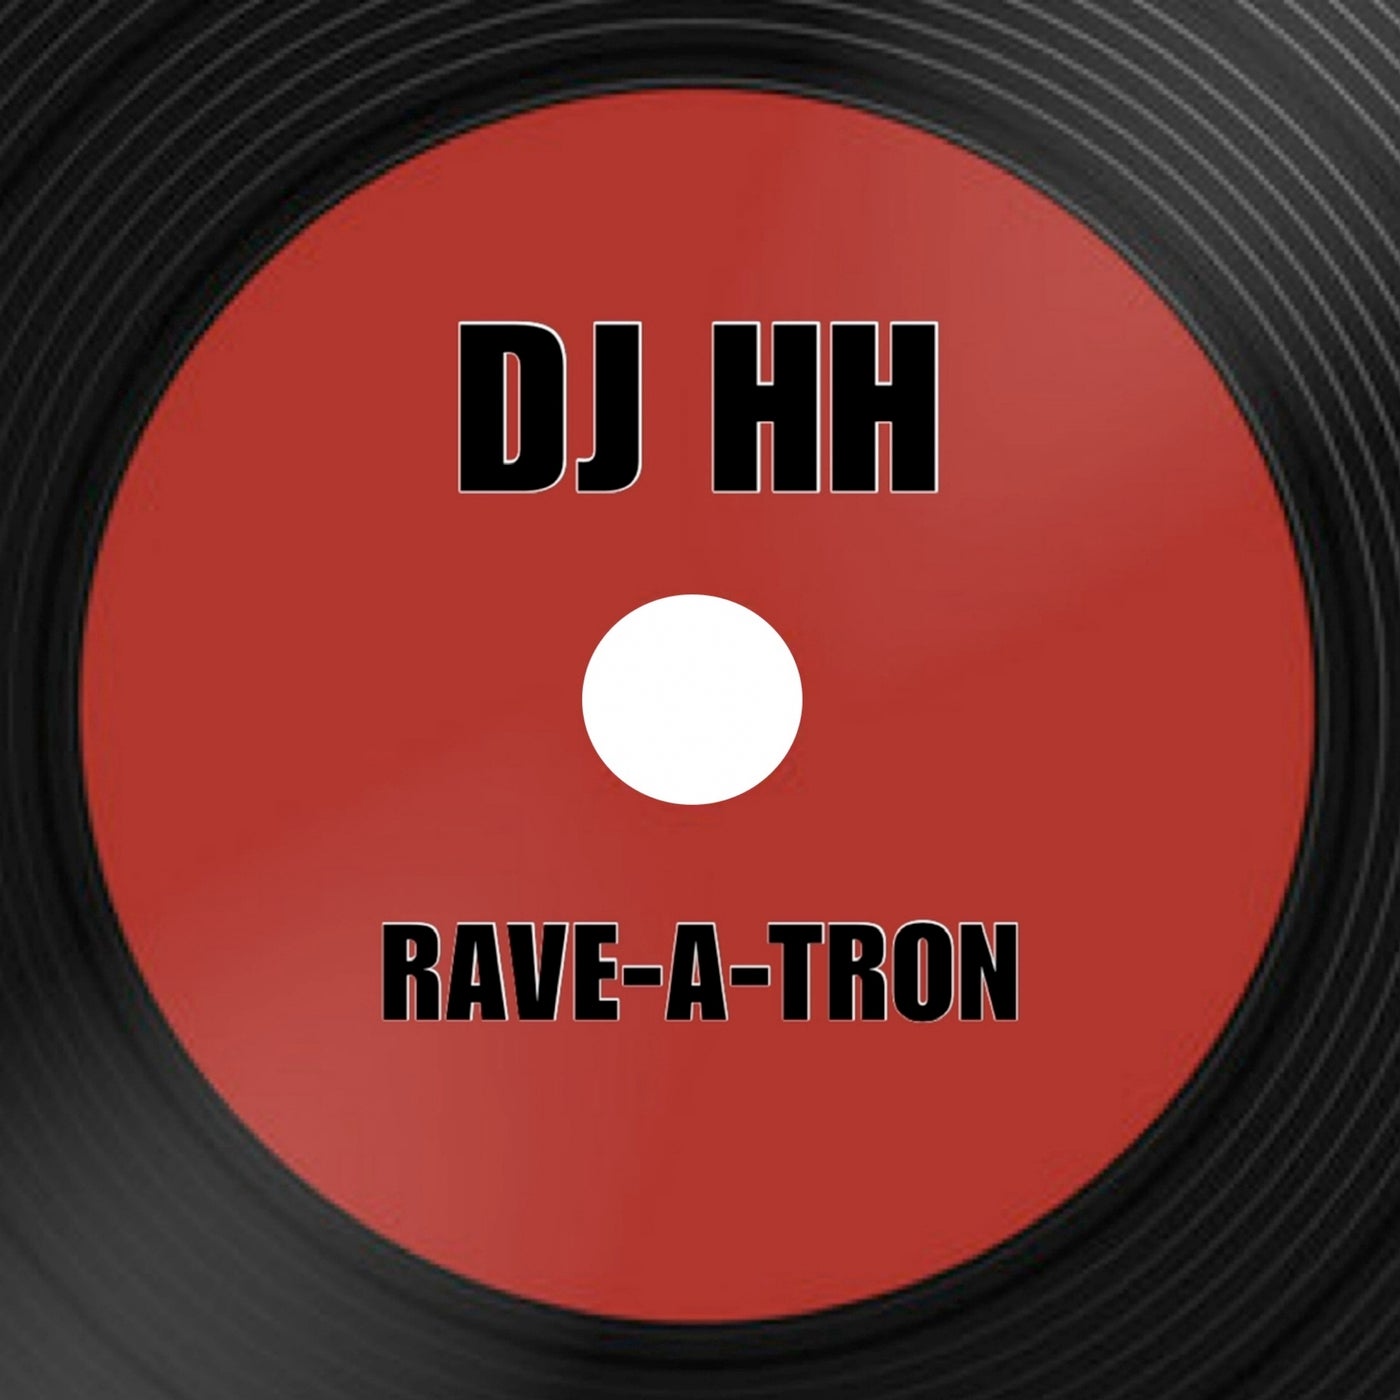 Rave-A-Tron